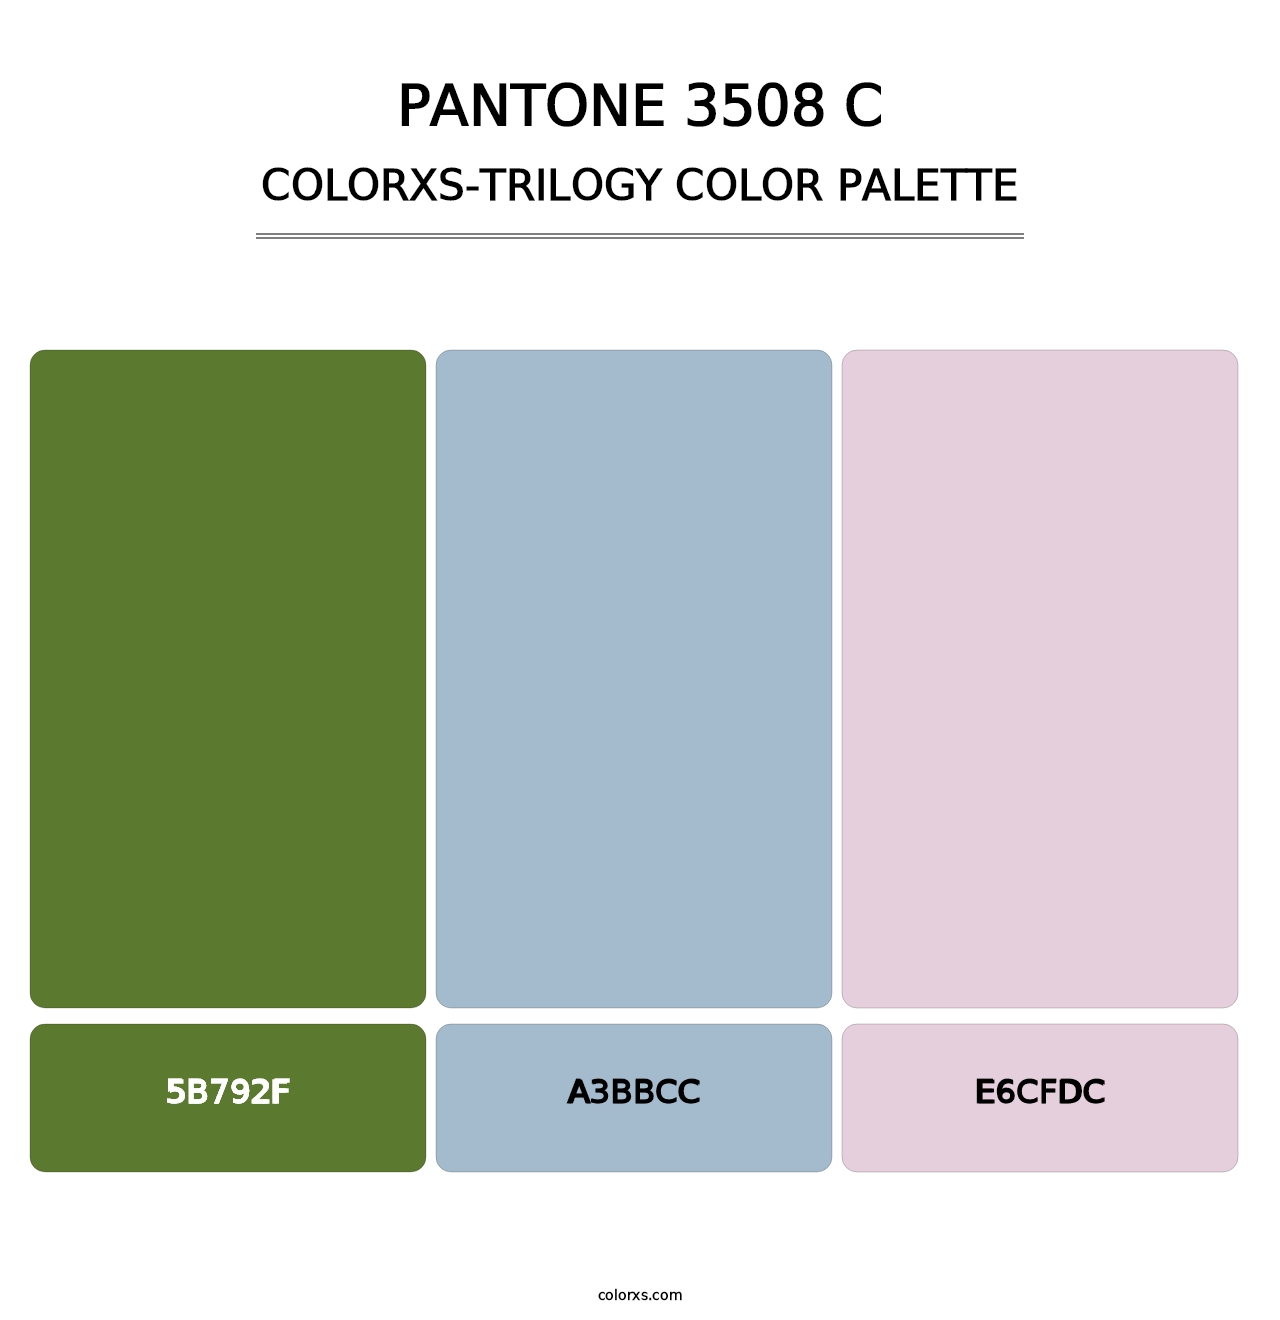 PANTONE 3508 C - Colorxs Trilogy Palette